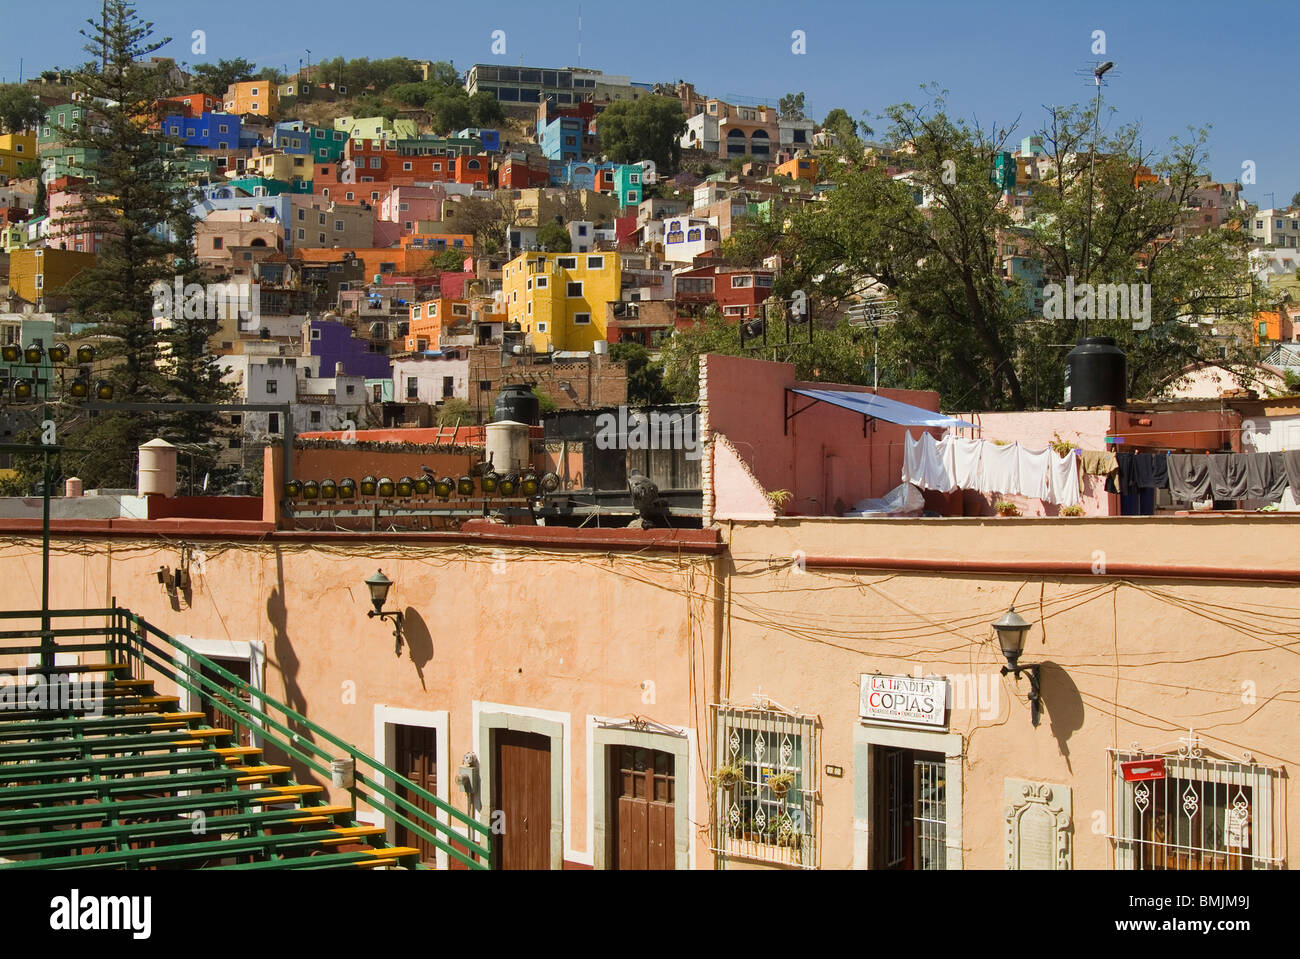 Historic town of Guanajuato, Province of Guanajuato, Mexico, Stock Photo